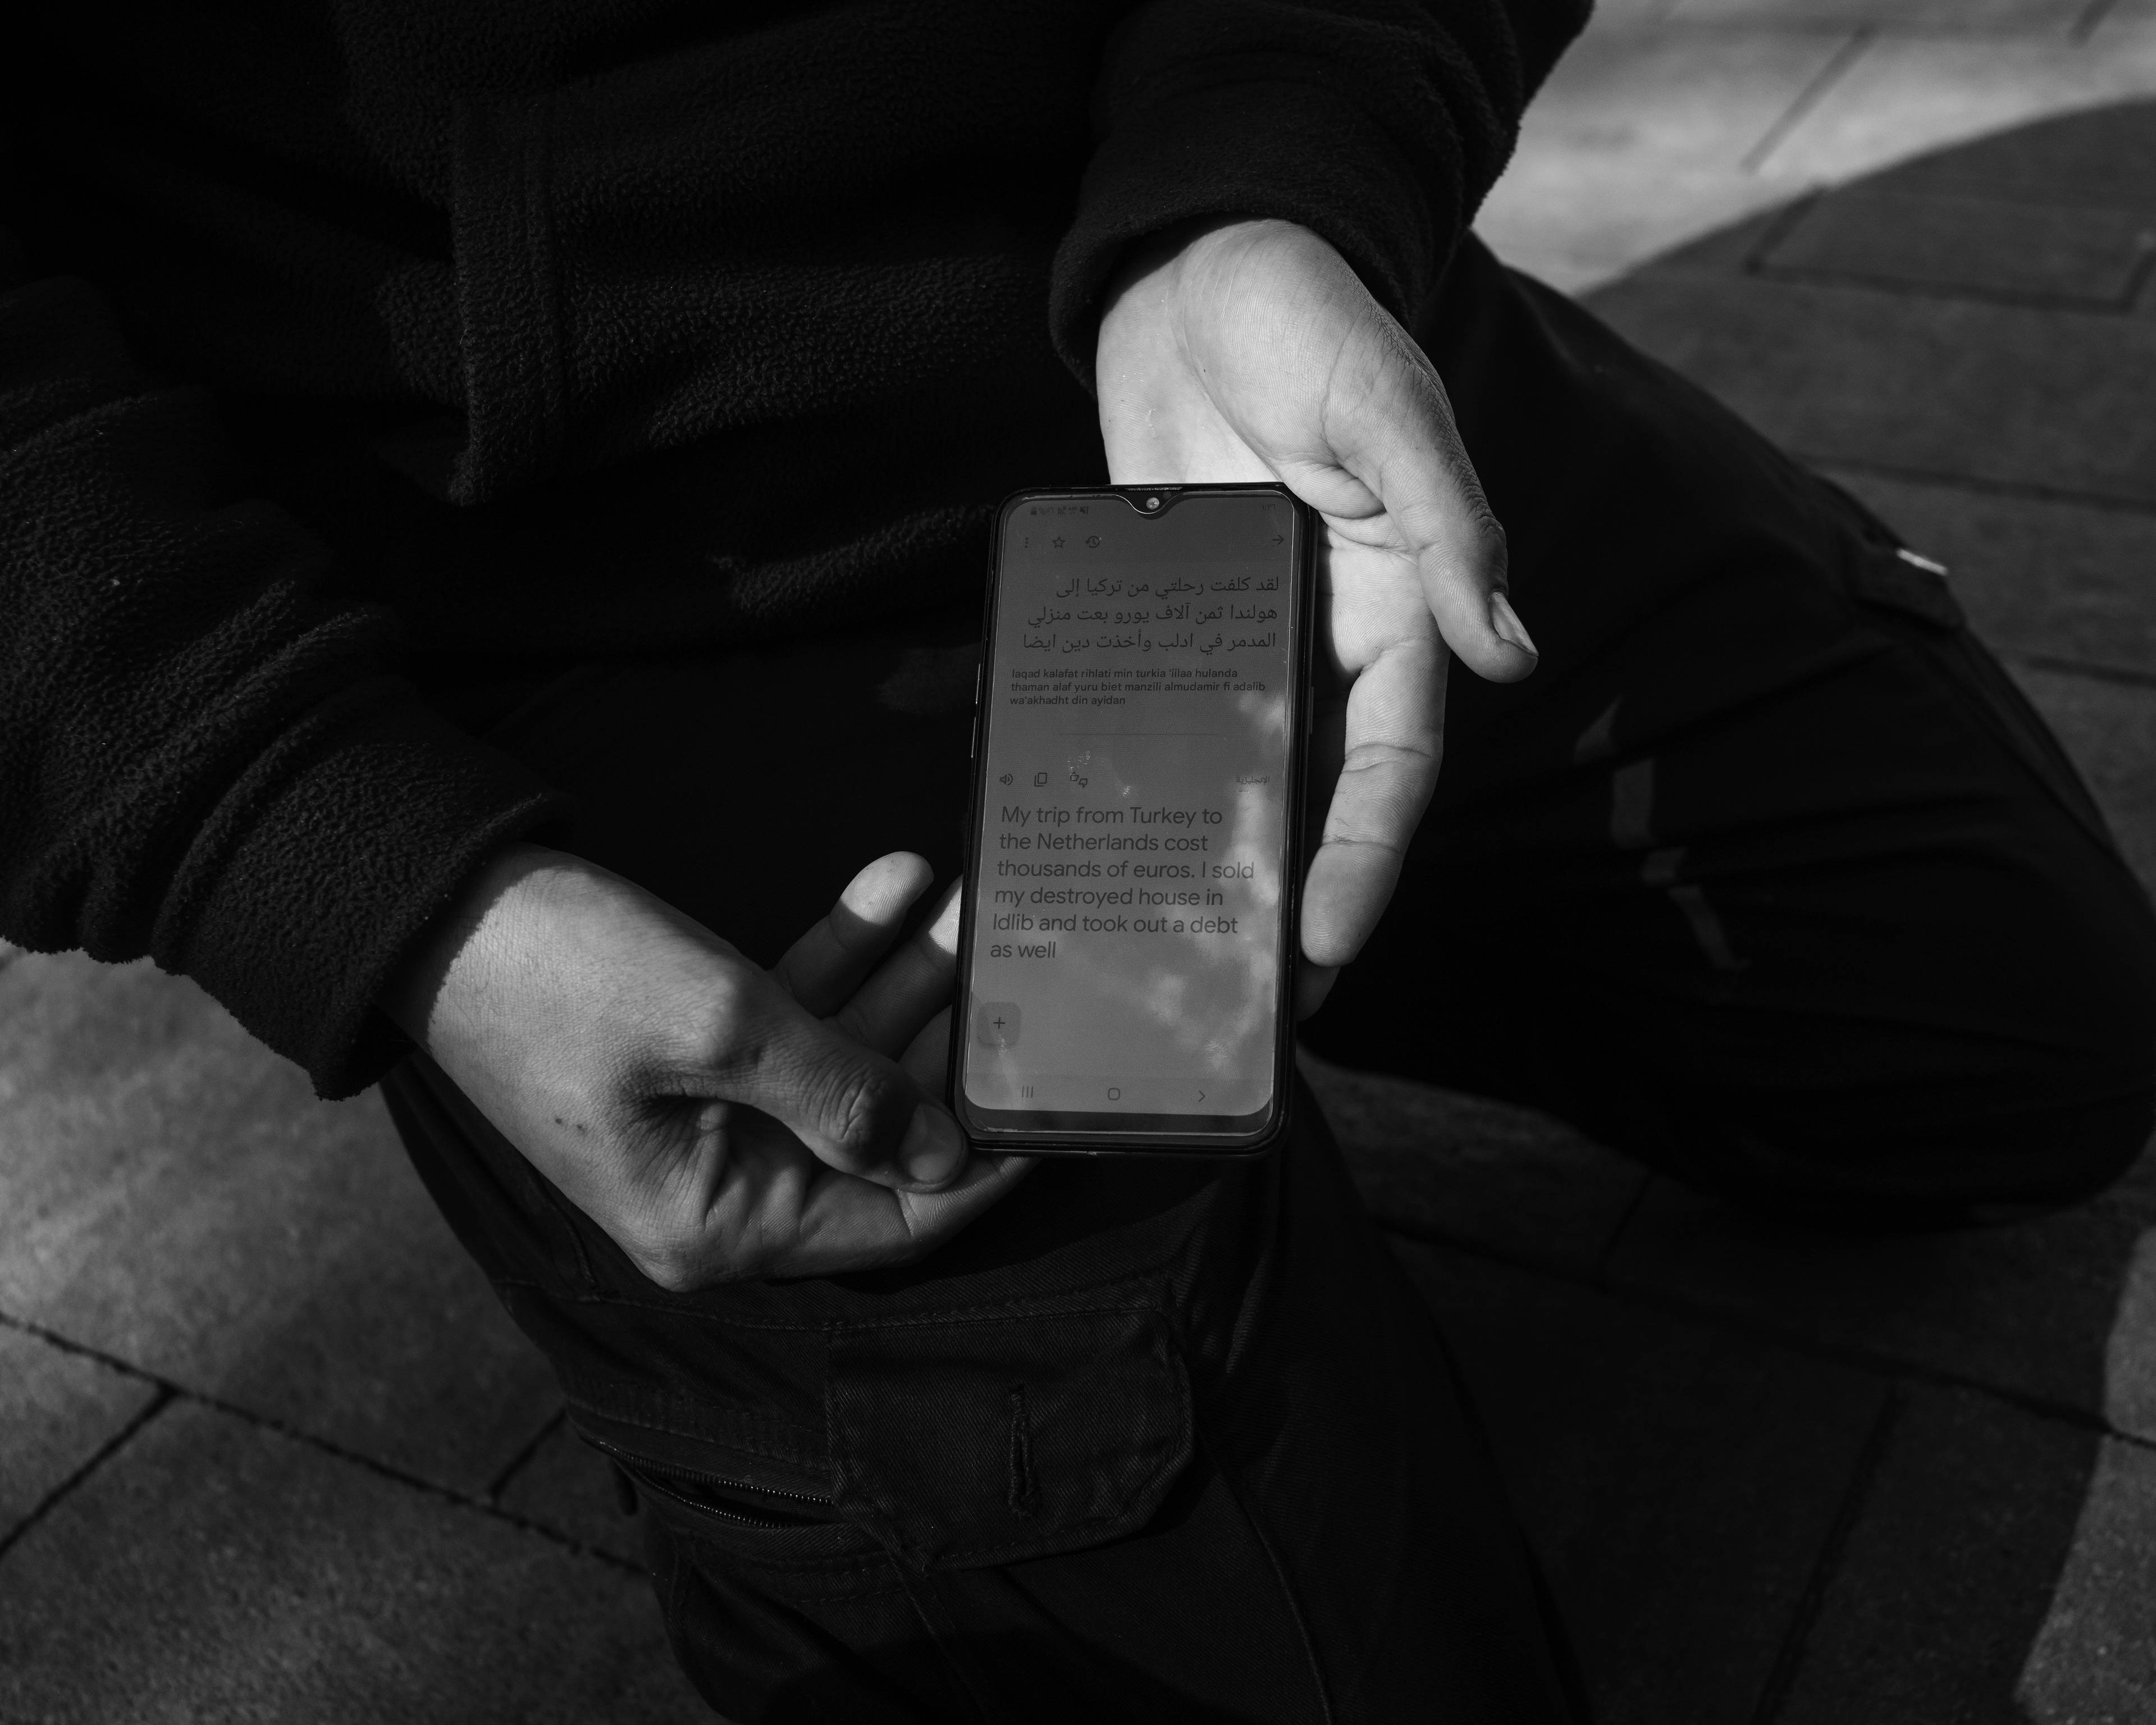 zbliżenie na ręce i ekran smartfona z arabskim tekstem tłumaczonym w translatorze na angielski, zdjęcie czarno-białe